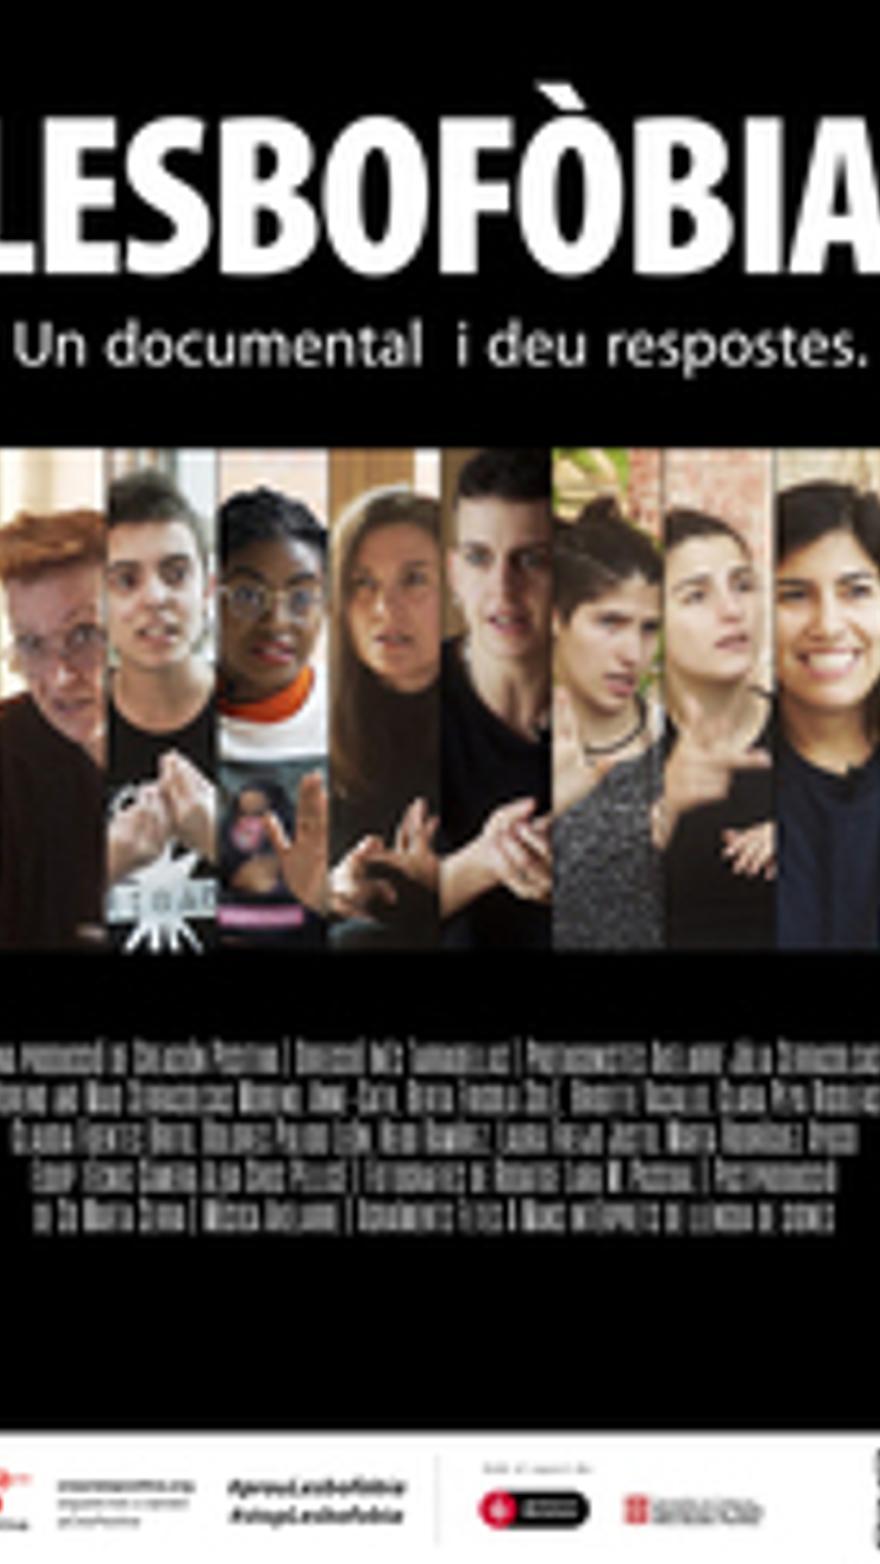 Lesbofobia. Un documental y diez respuestas